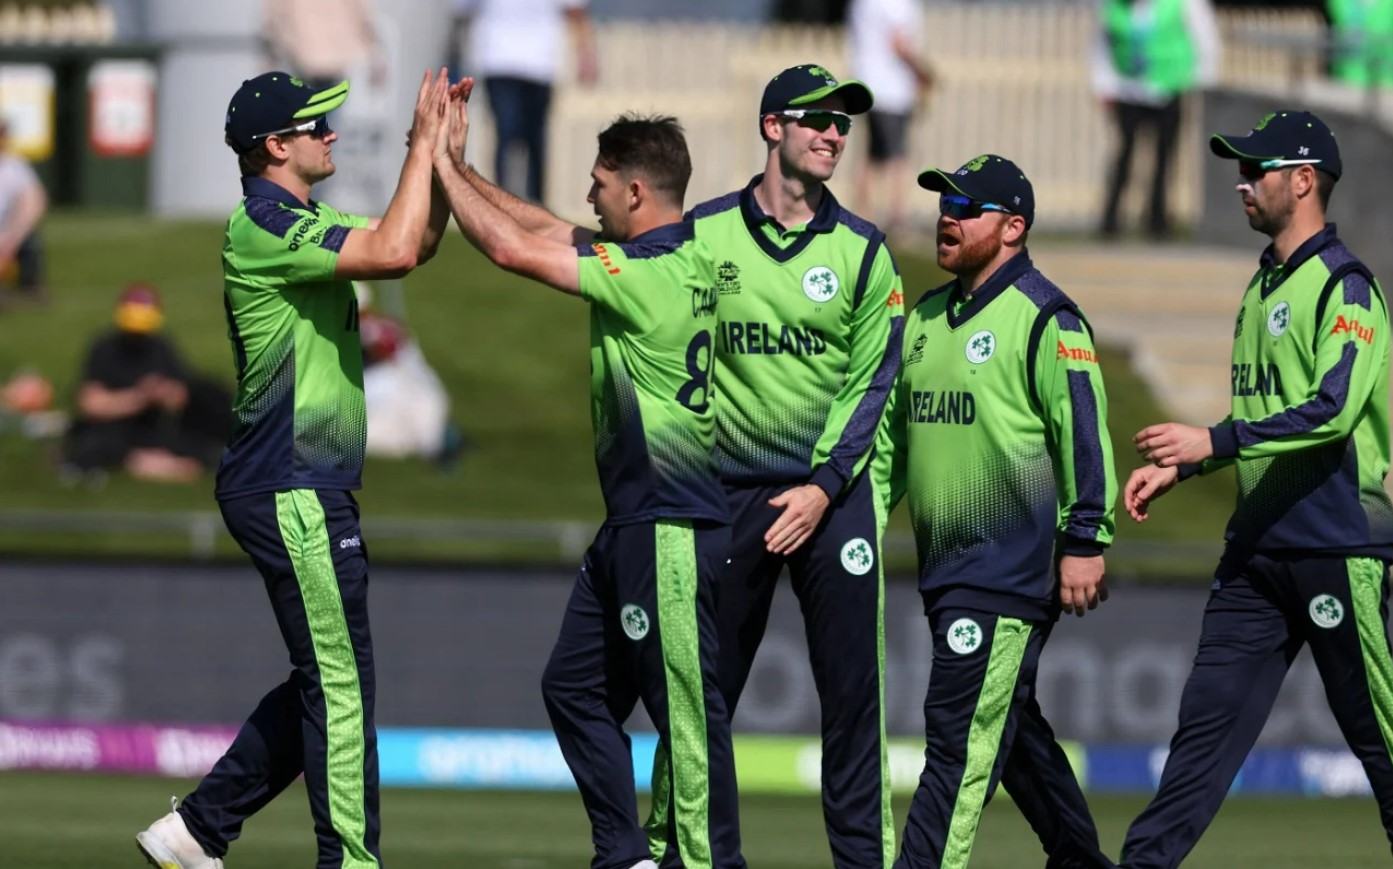 विश्वकप क्रिकेट : आयरल्याण्डको पहिलो जित, स्कटल्याण्ड ४ विकेटले स्तब्ध